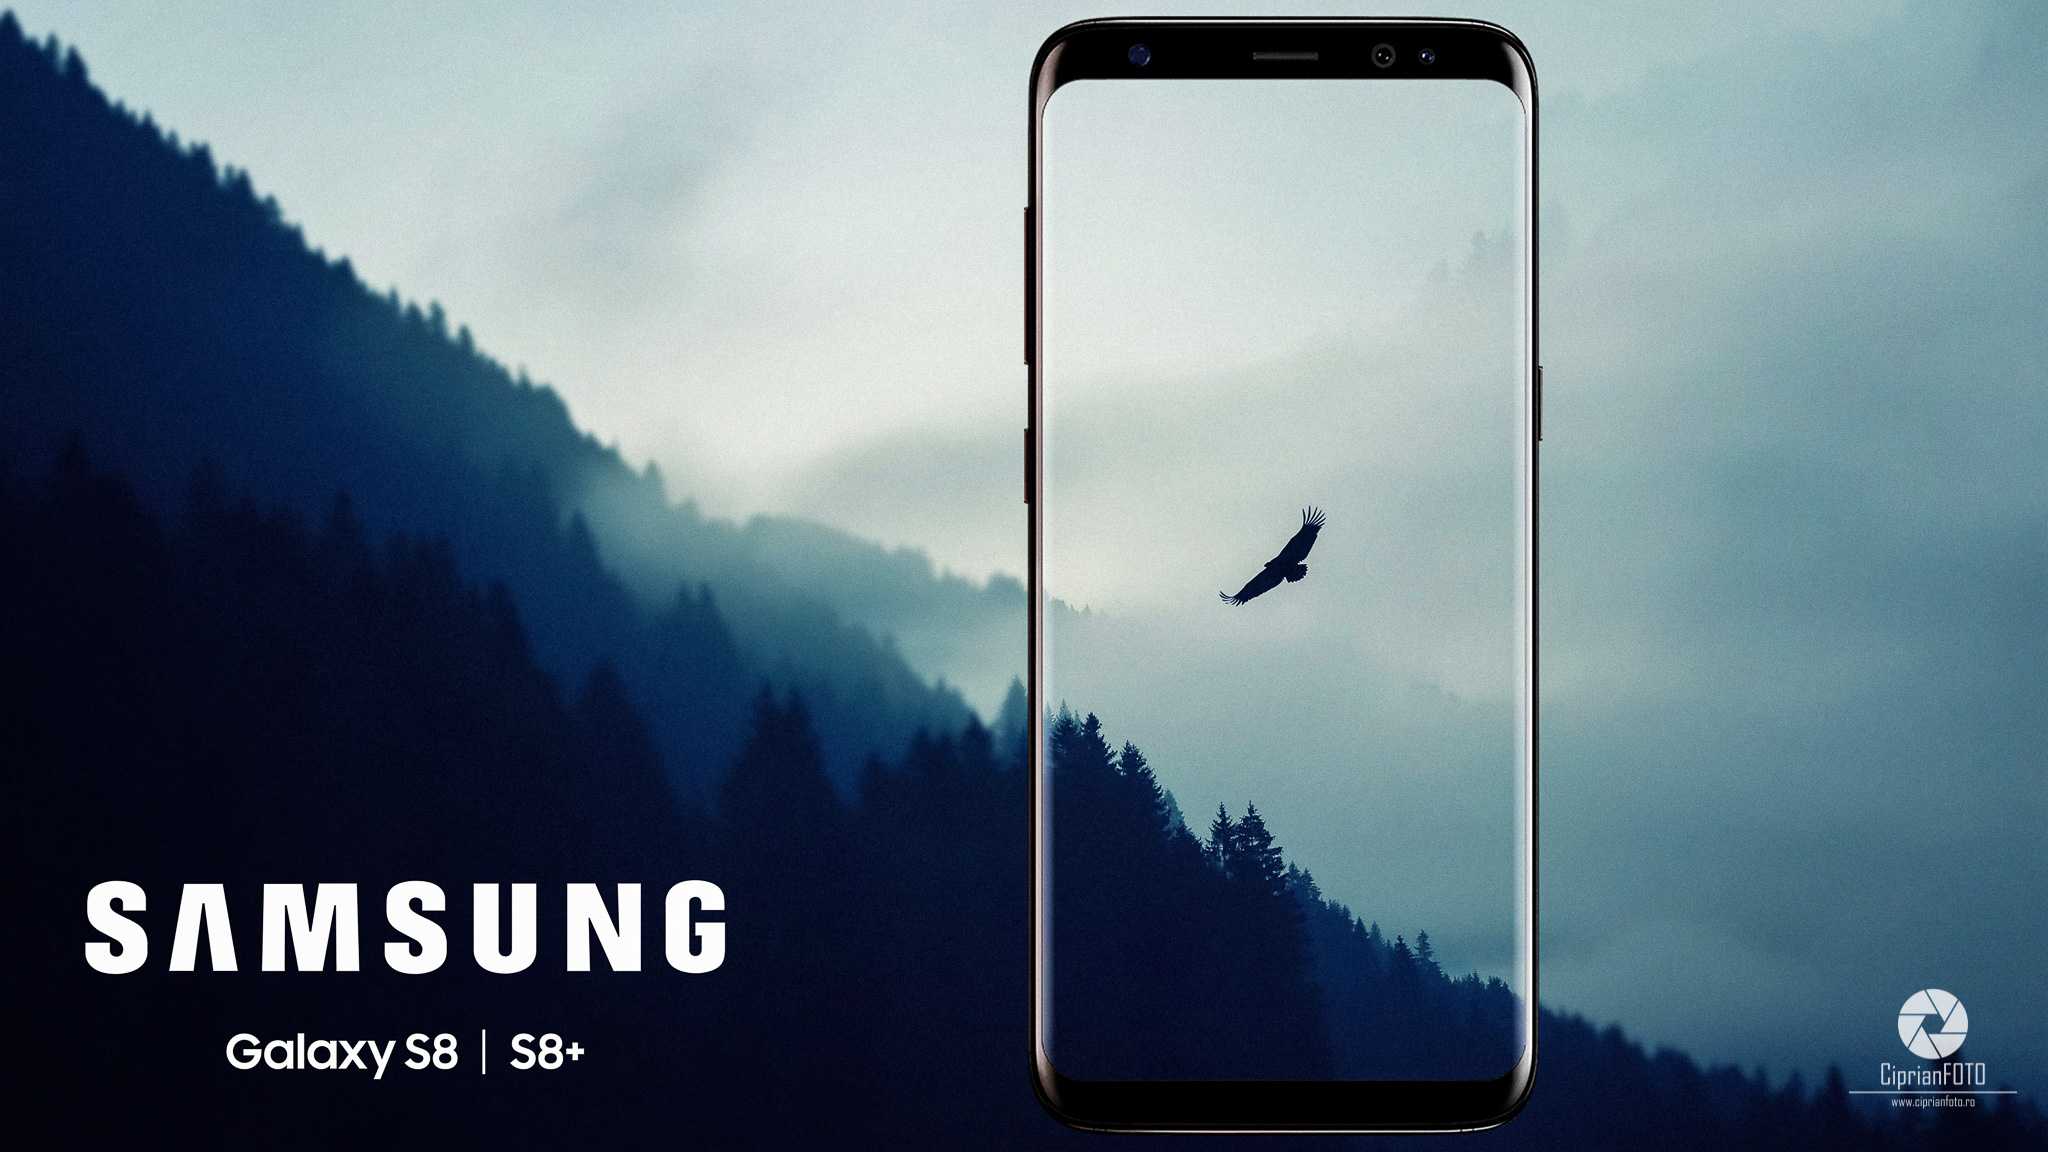 Samsung Galaxy S8 Plus, Photoshop Manipulation Tutorial, CiprianFOTO